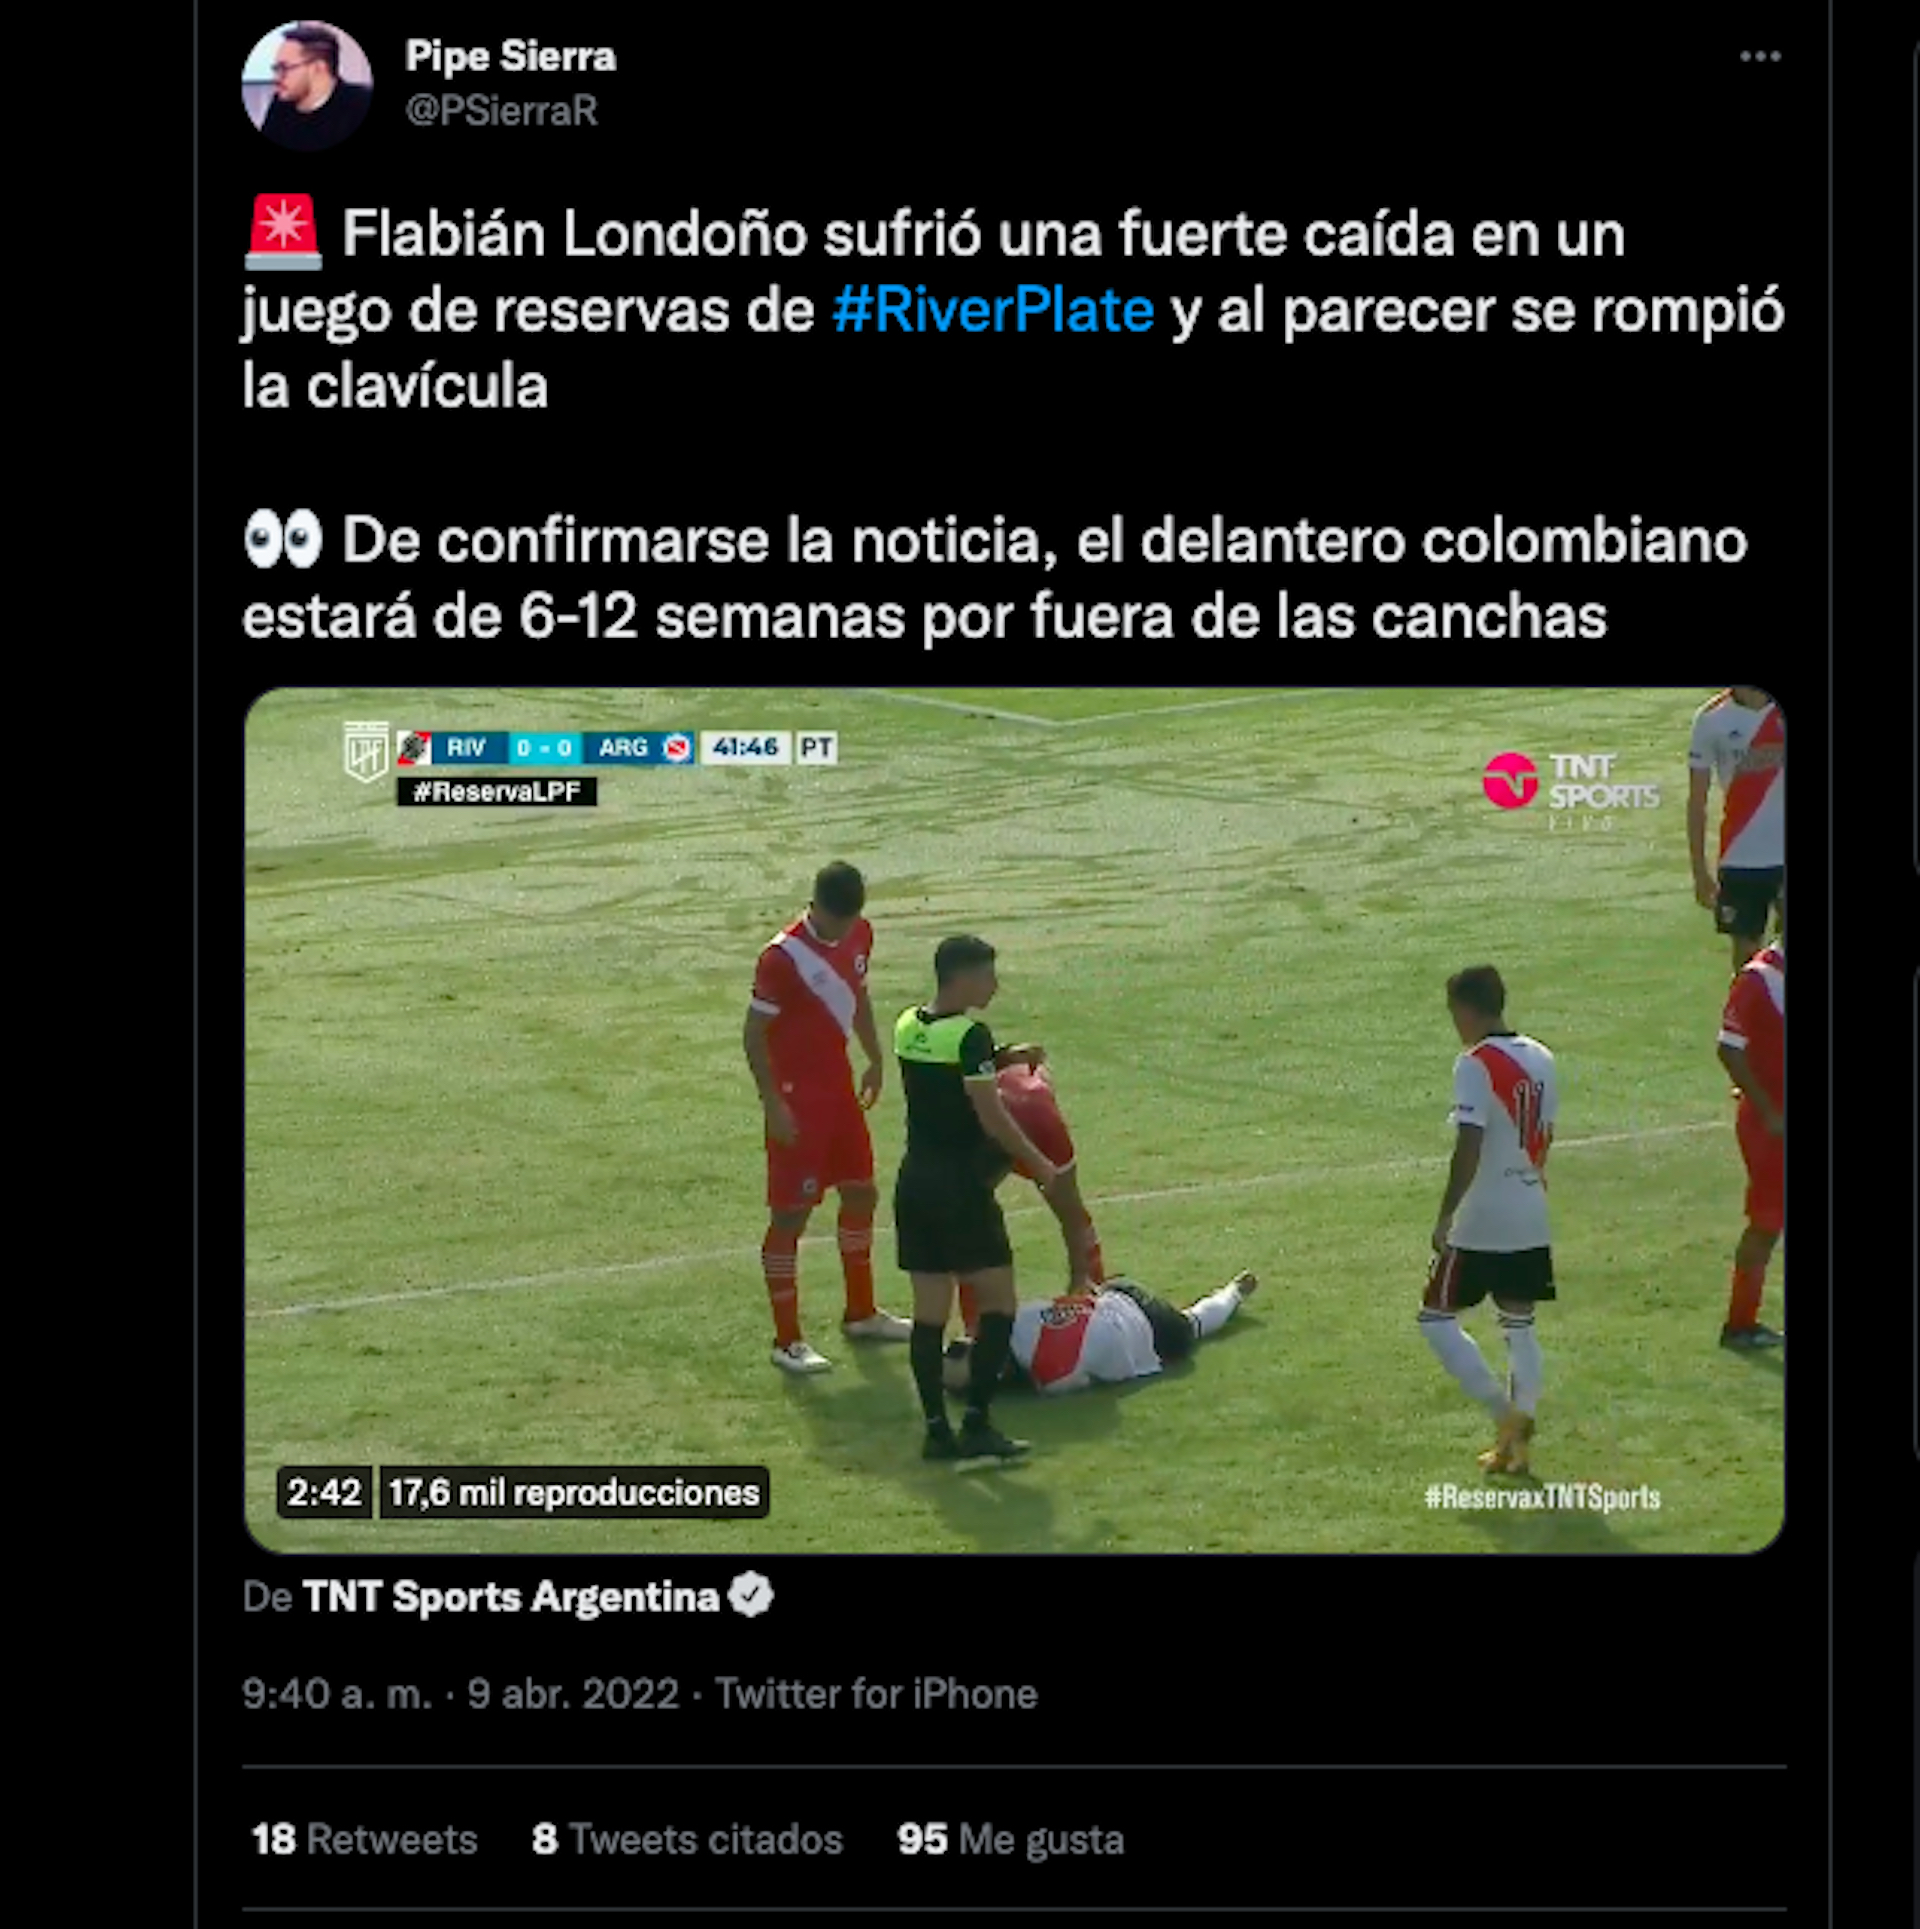 Lesión de Flabián Londoño en el partido de reservas de River Plate contra Argentinos Juniors / (Twitter: @PSierraR)